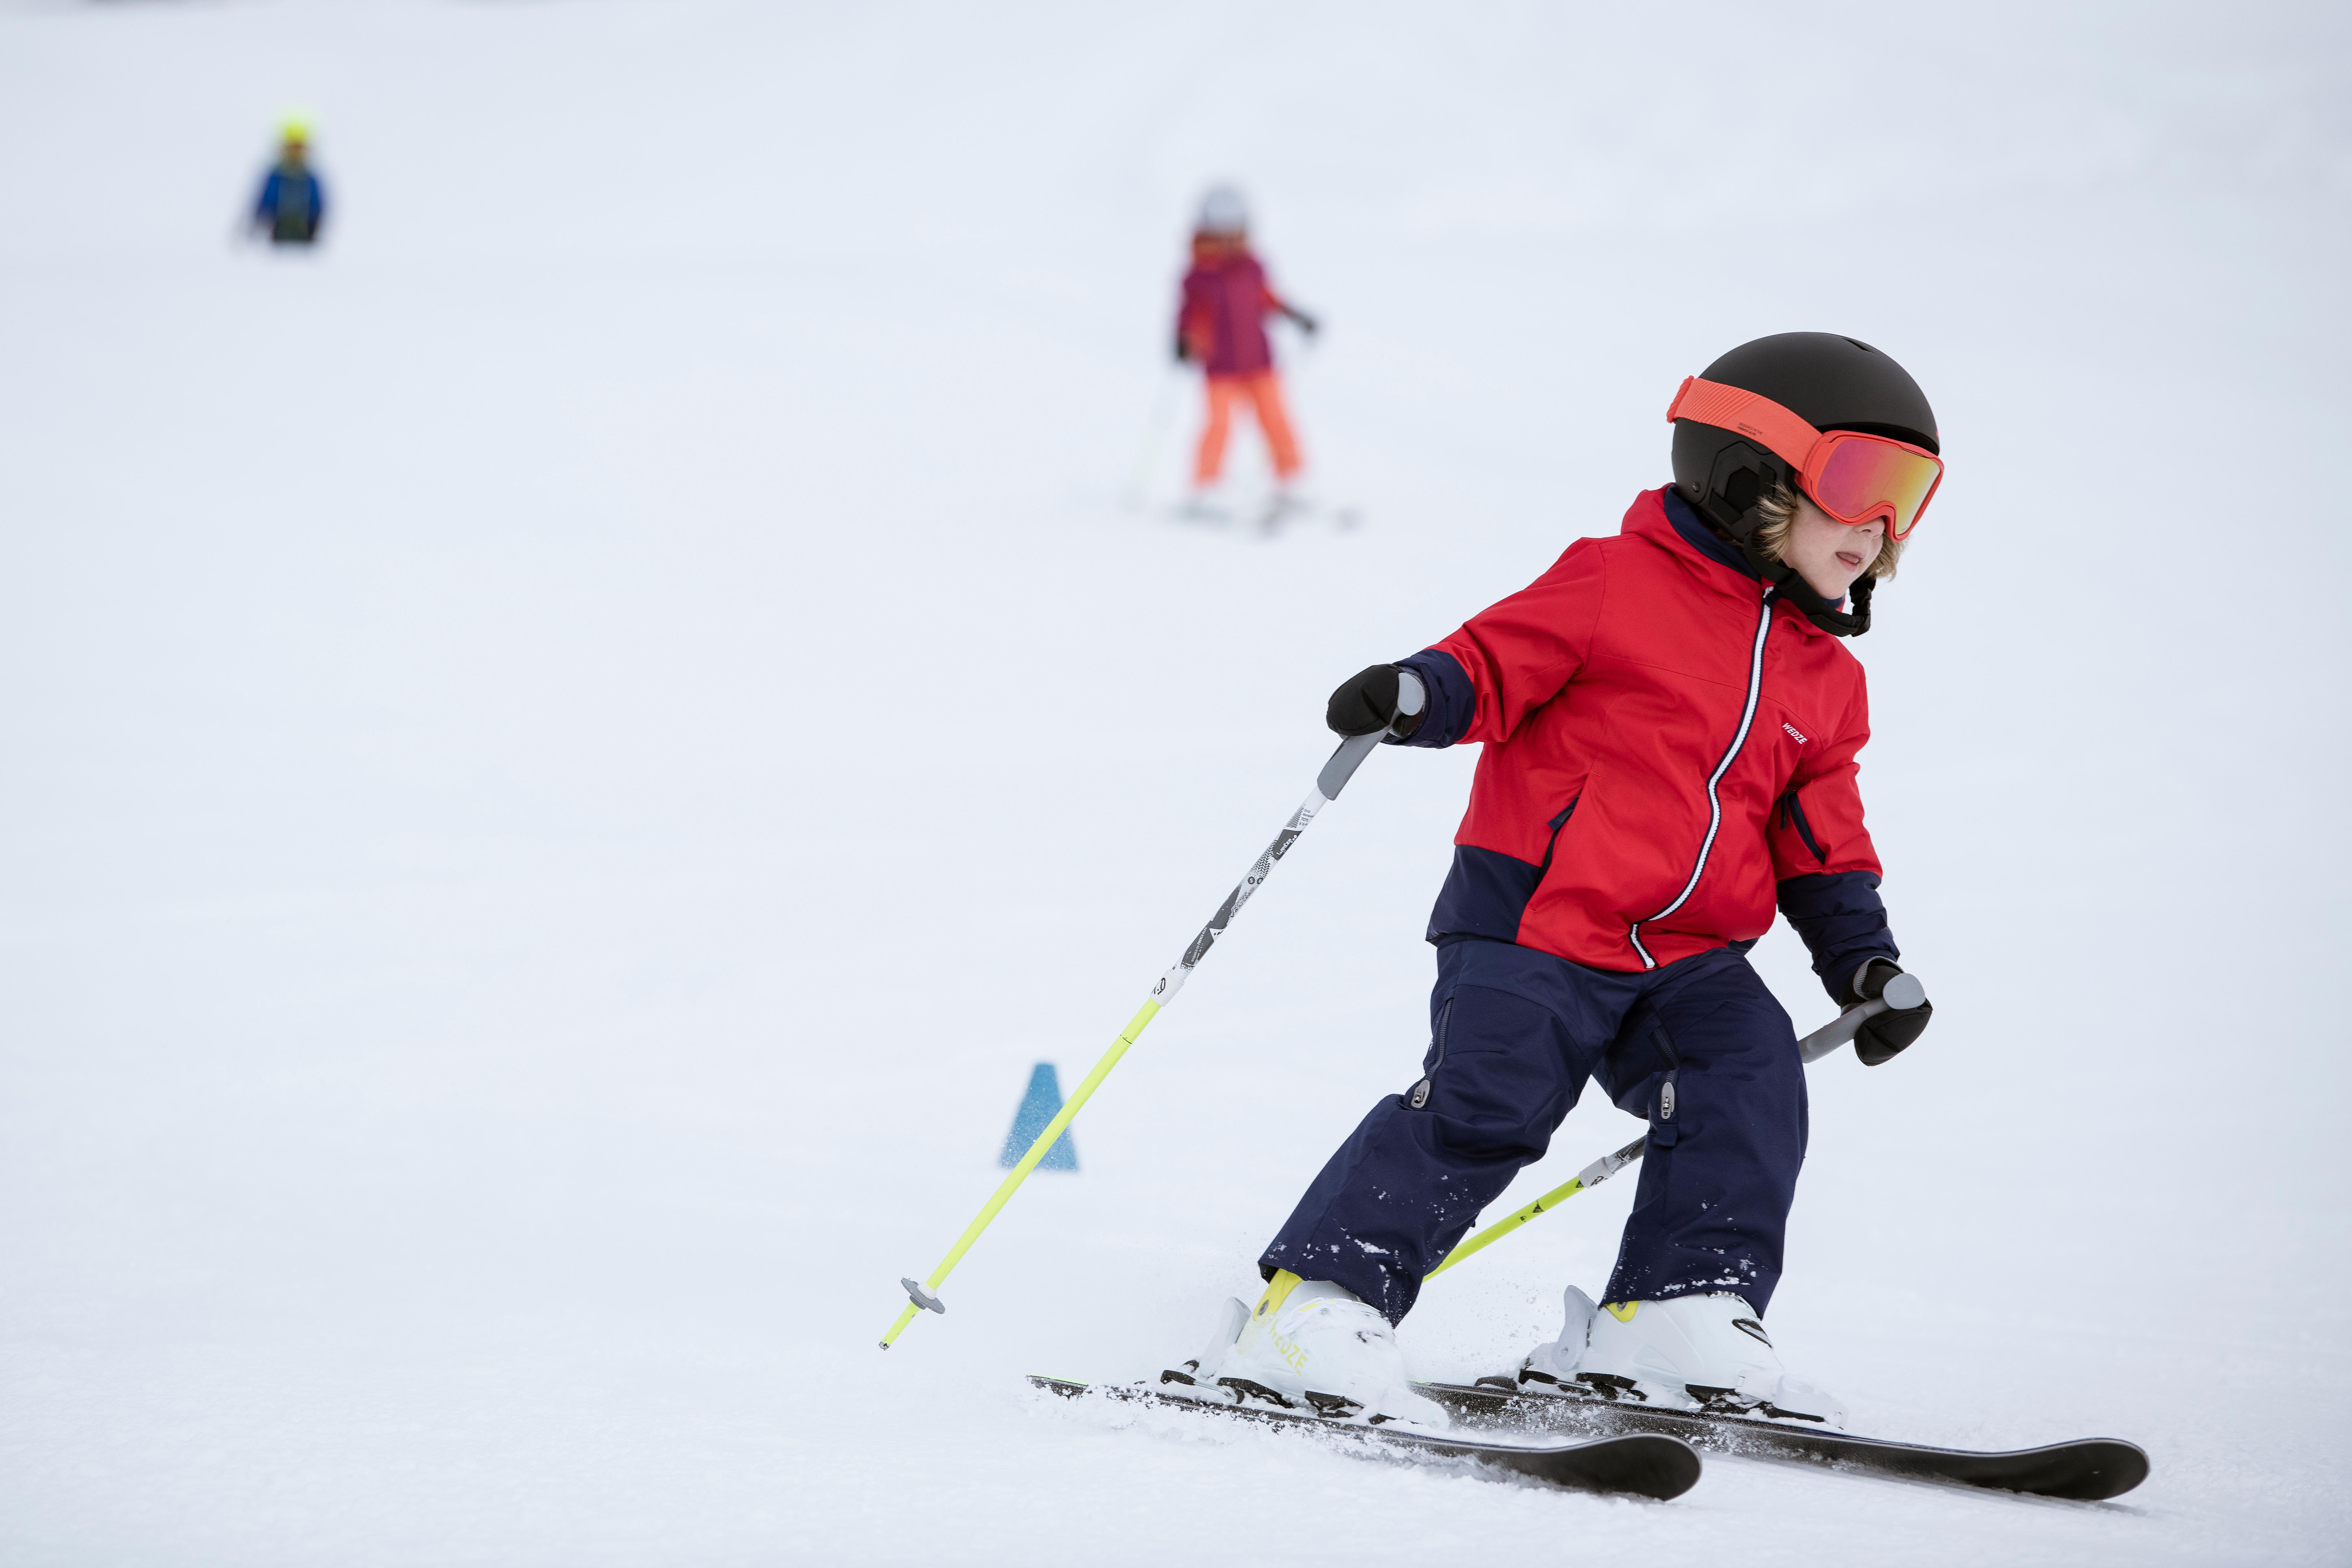 Bottes de ski alpin enfant – Pumzi 500 - WEDZE